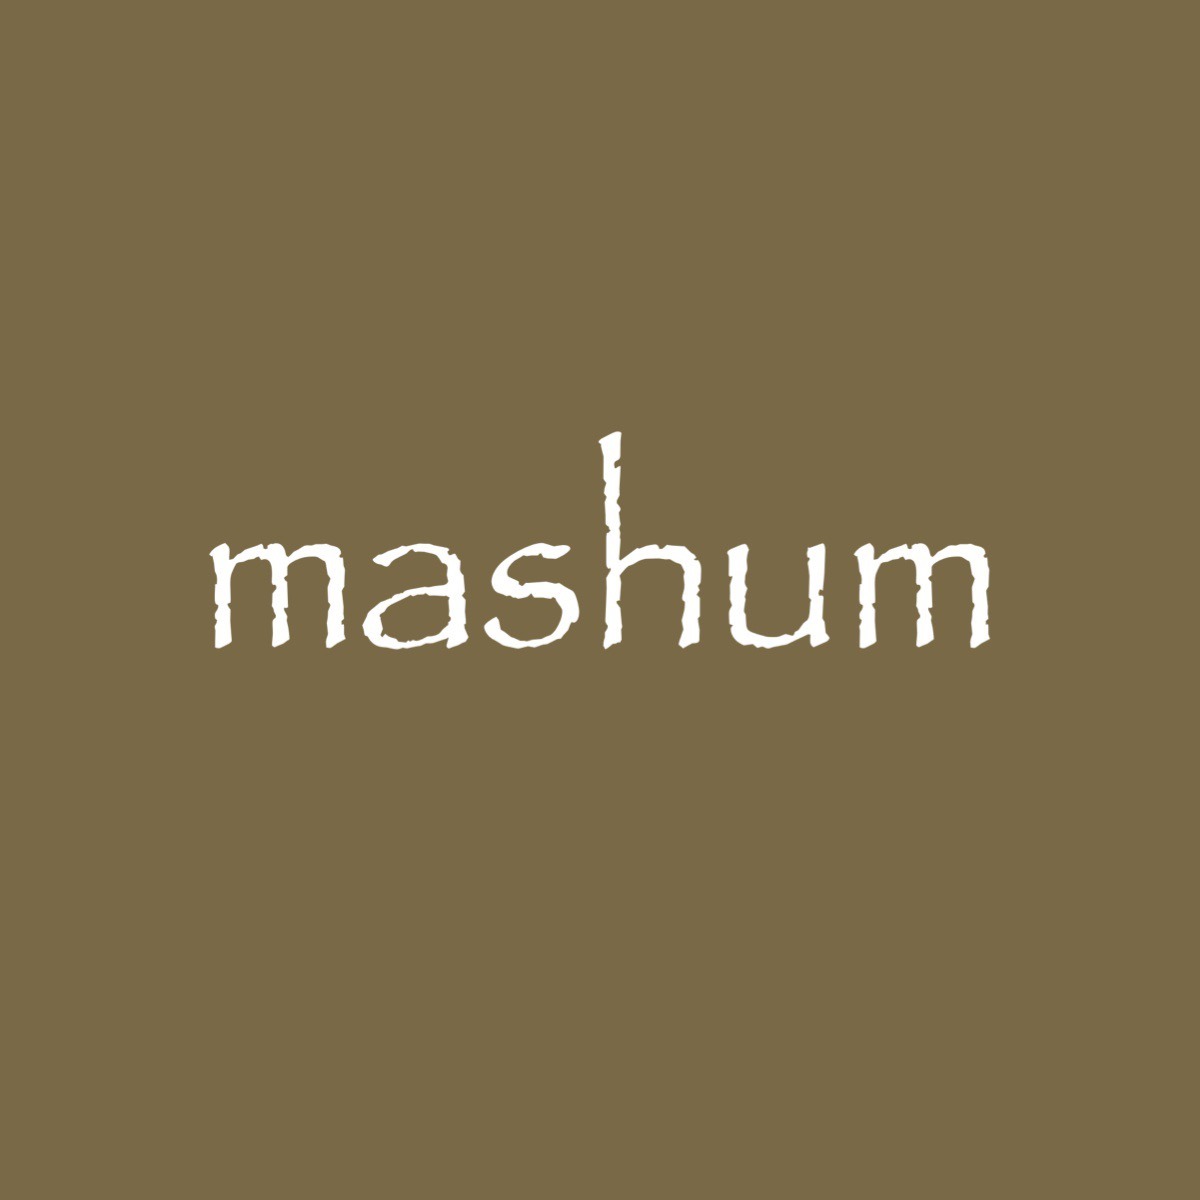 mashum